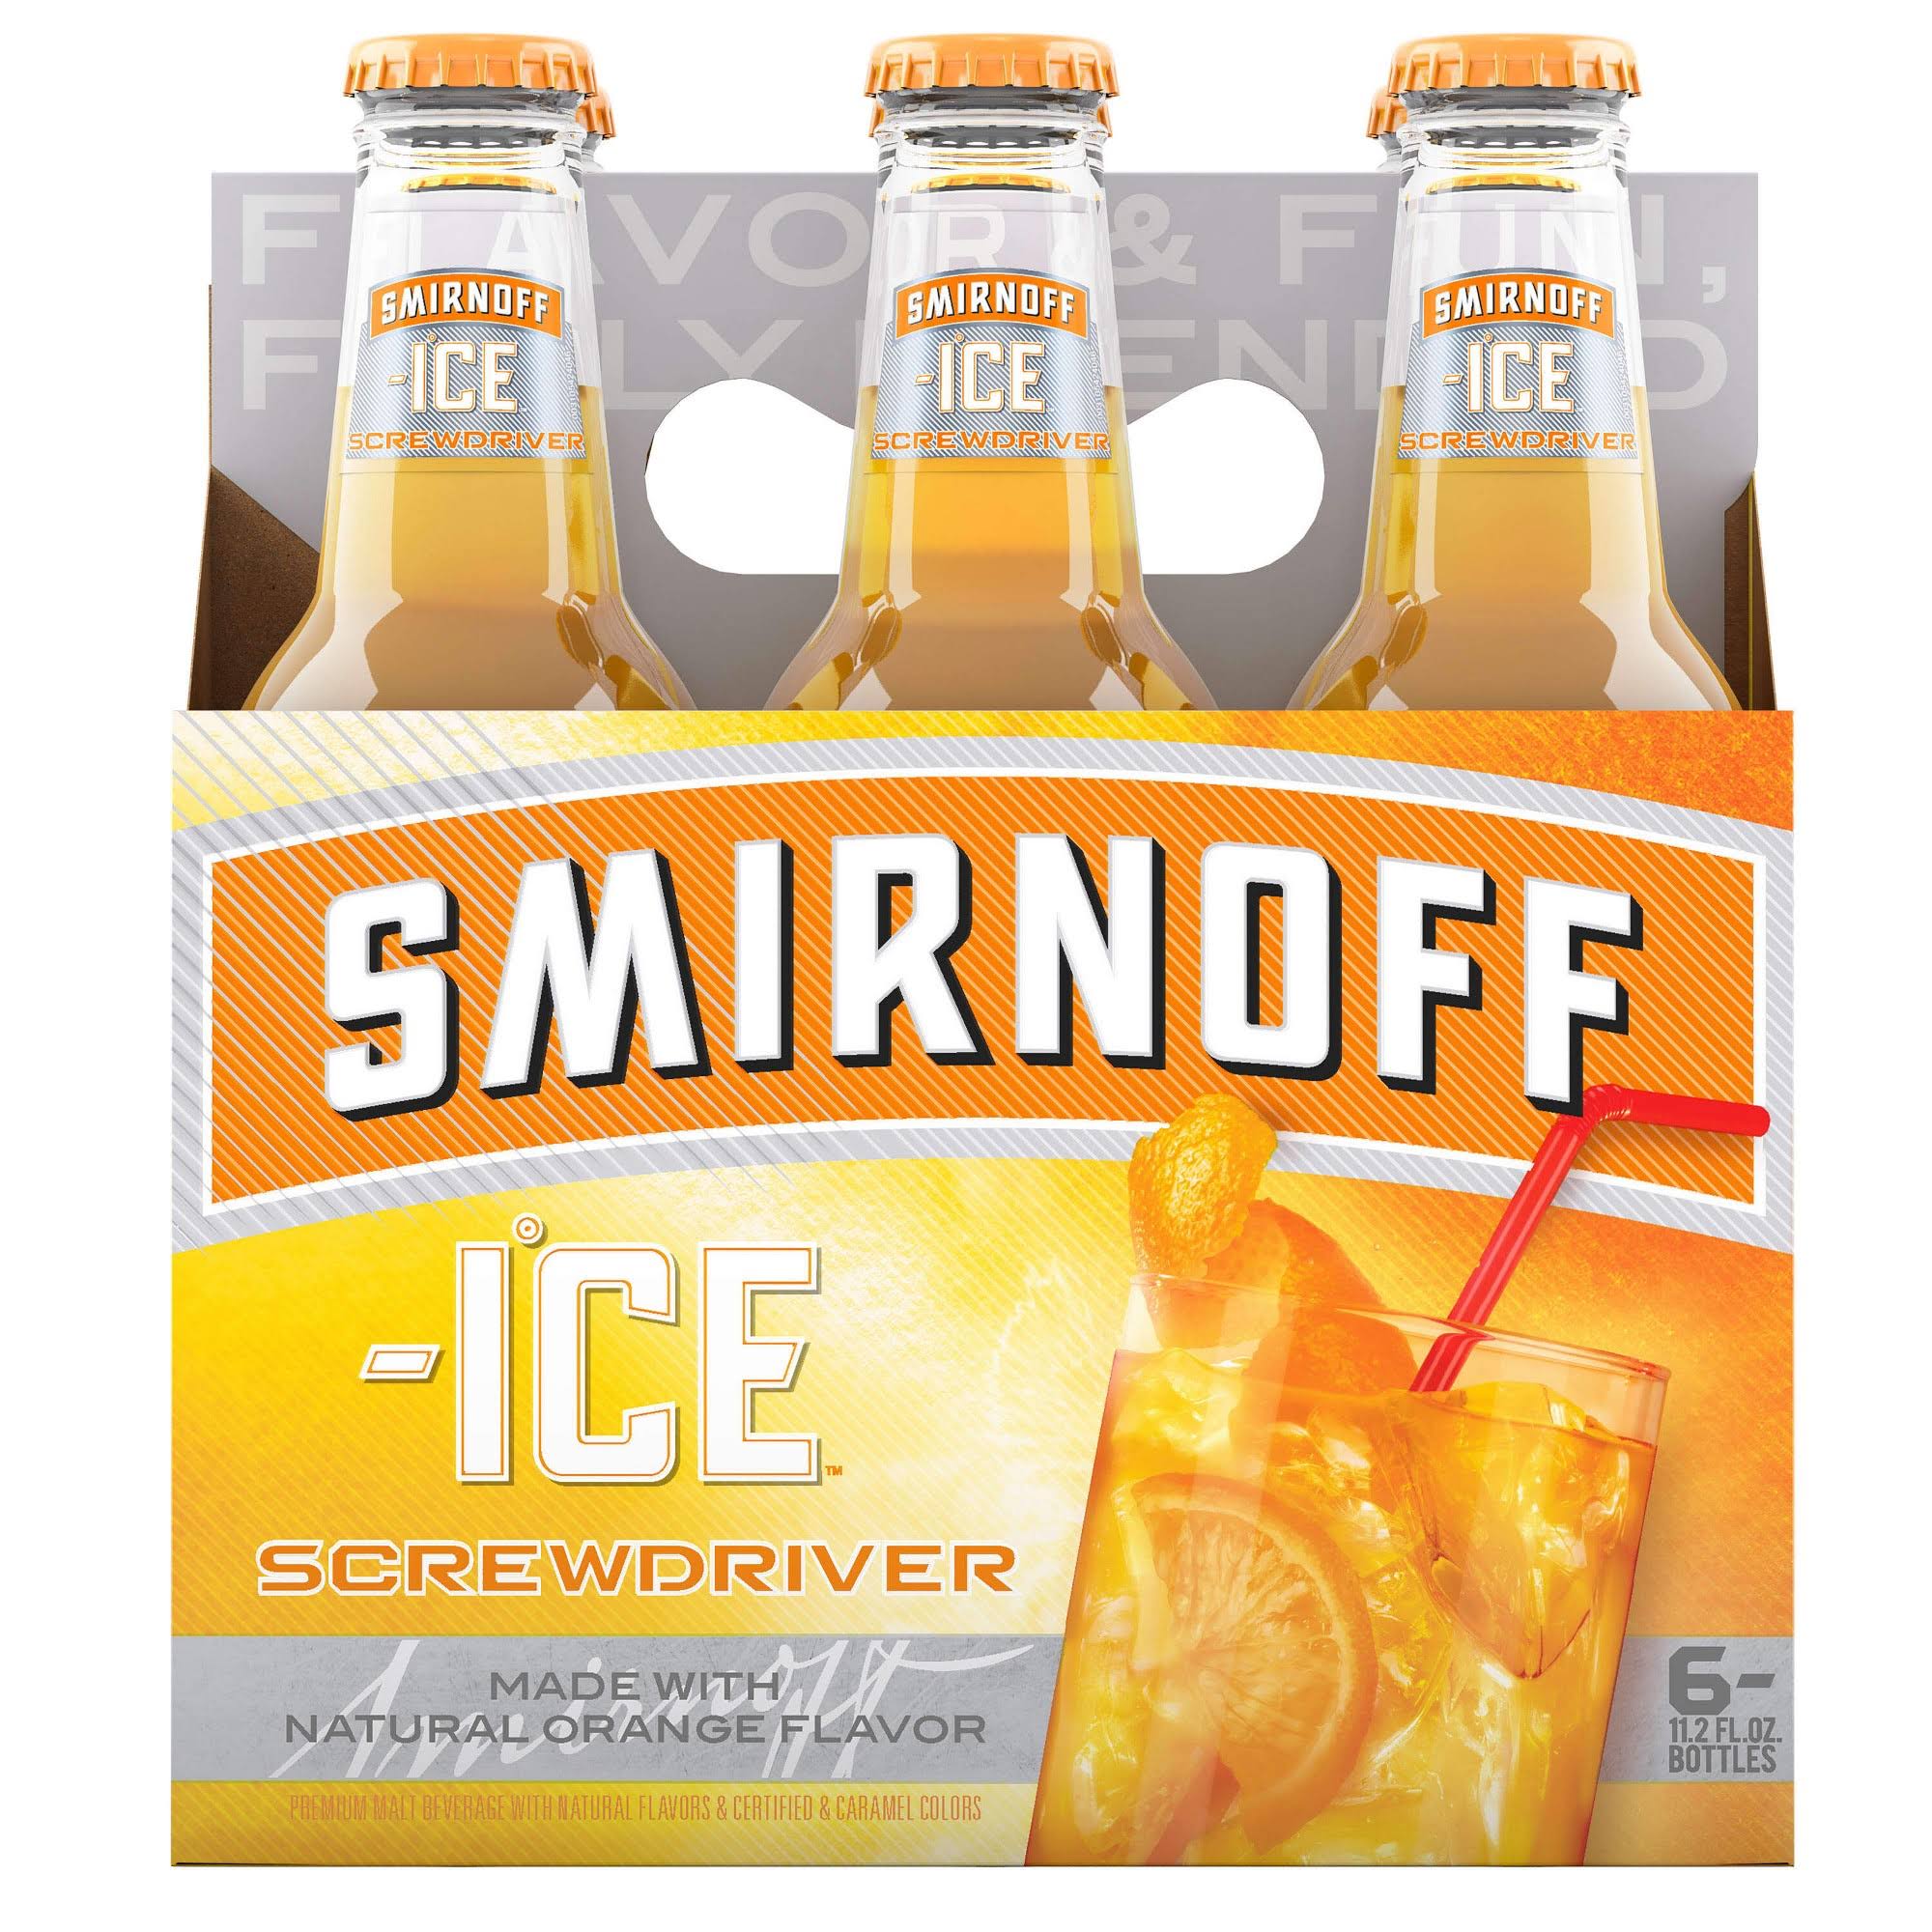 Smirnoff Ice Malt Beverage, Screwdriver - 6 pack, 11.2 fl oz bottles